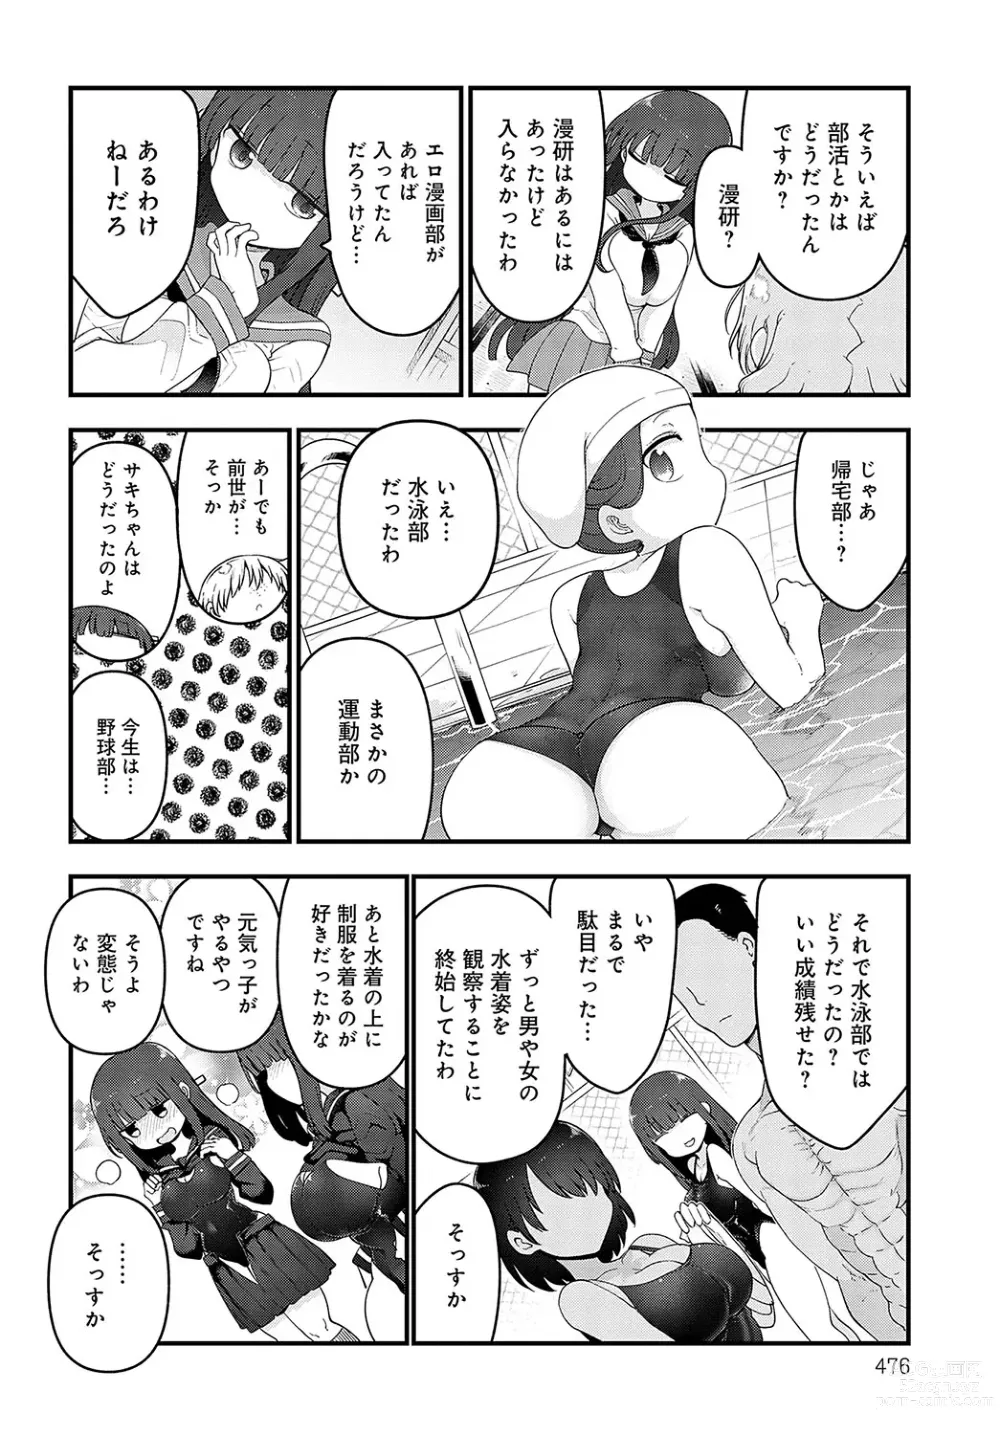 Page 475 of manga COMIC Anthurium 2023-12